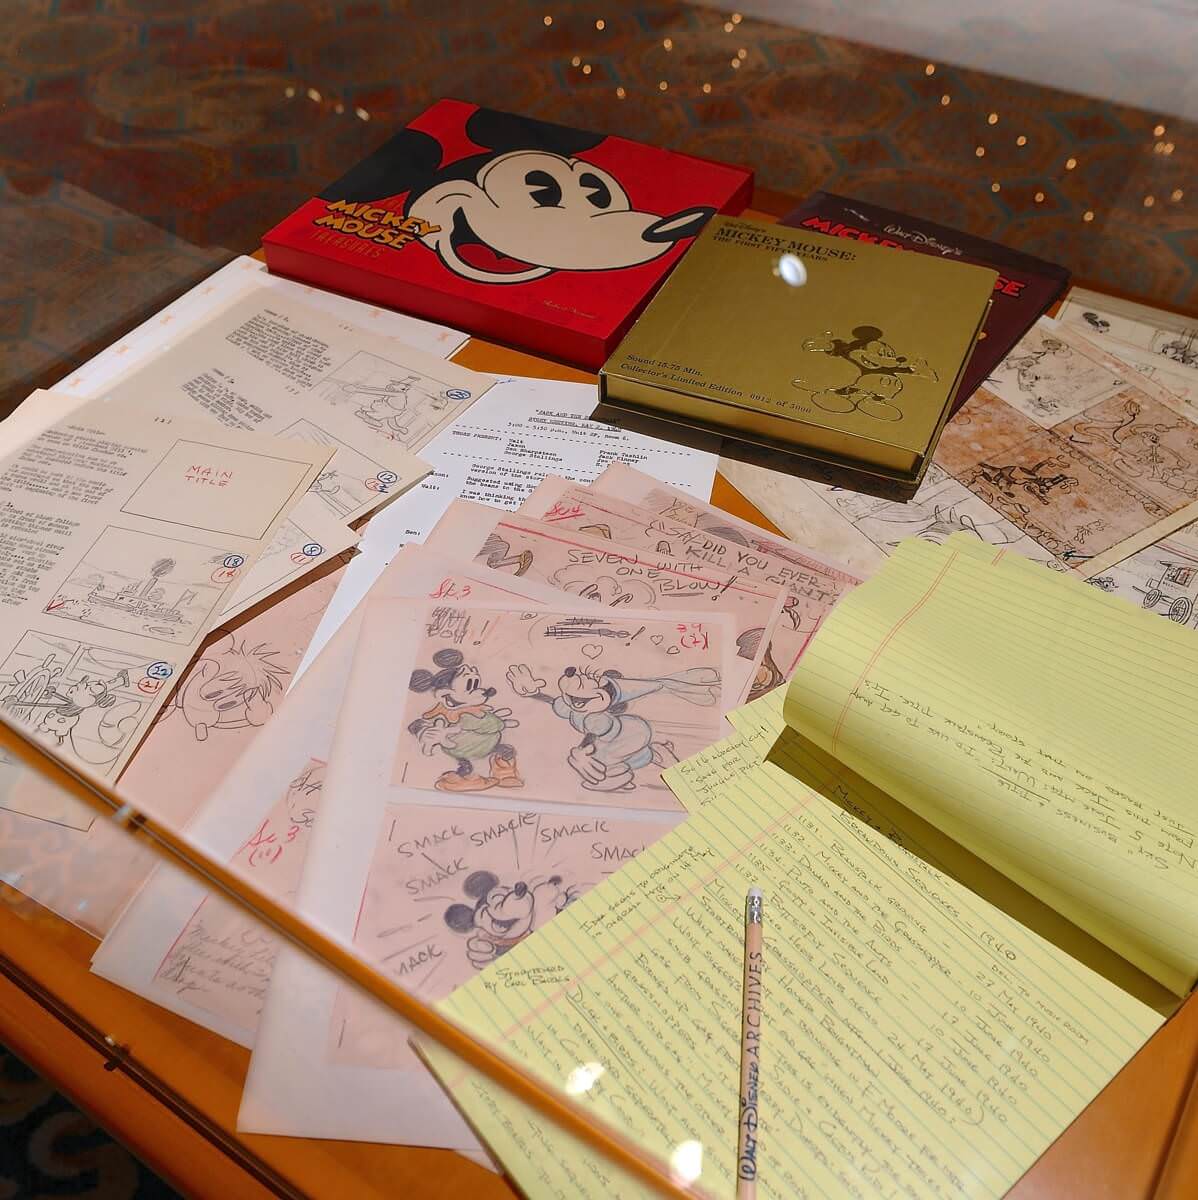 ウォルト ディズニー アーカイブス展 ミッキーマウスから続く 未来への物語